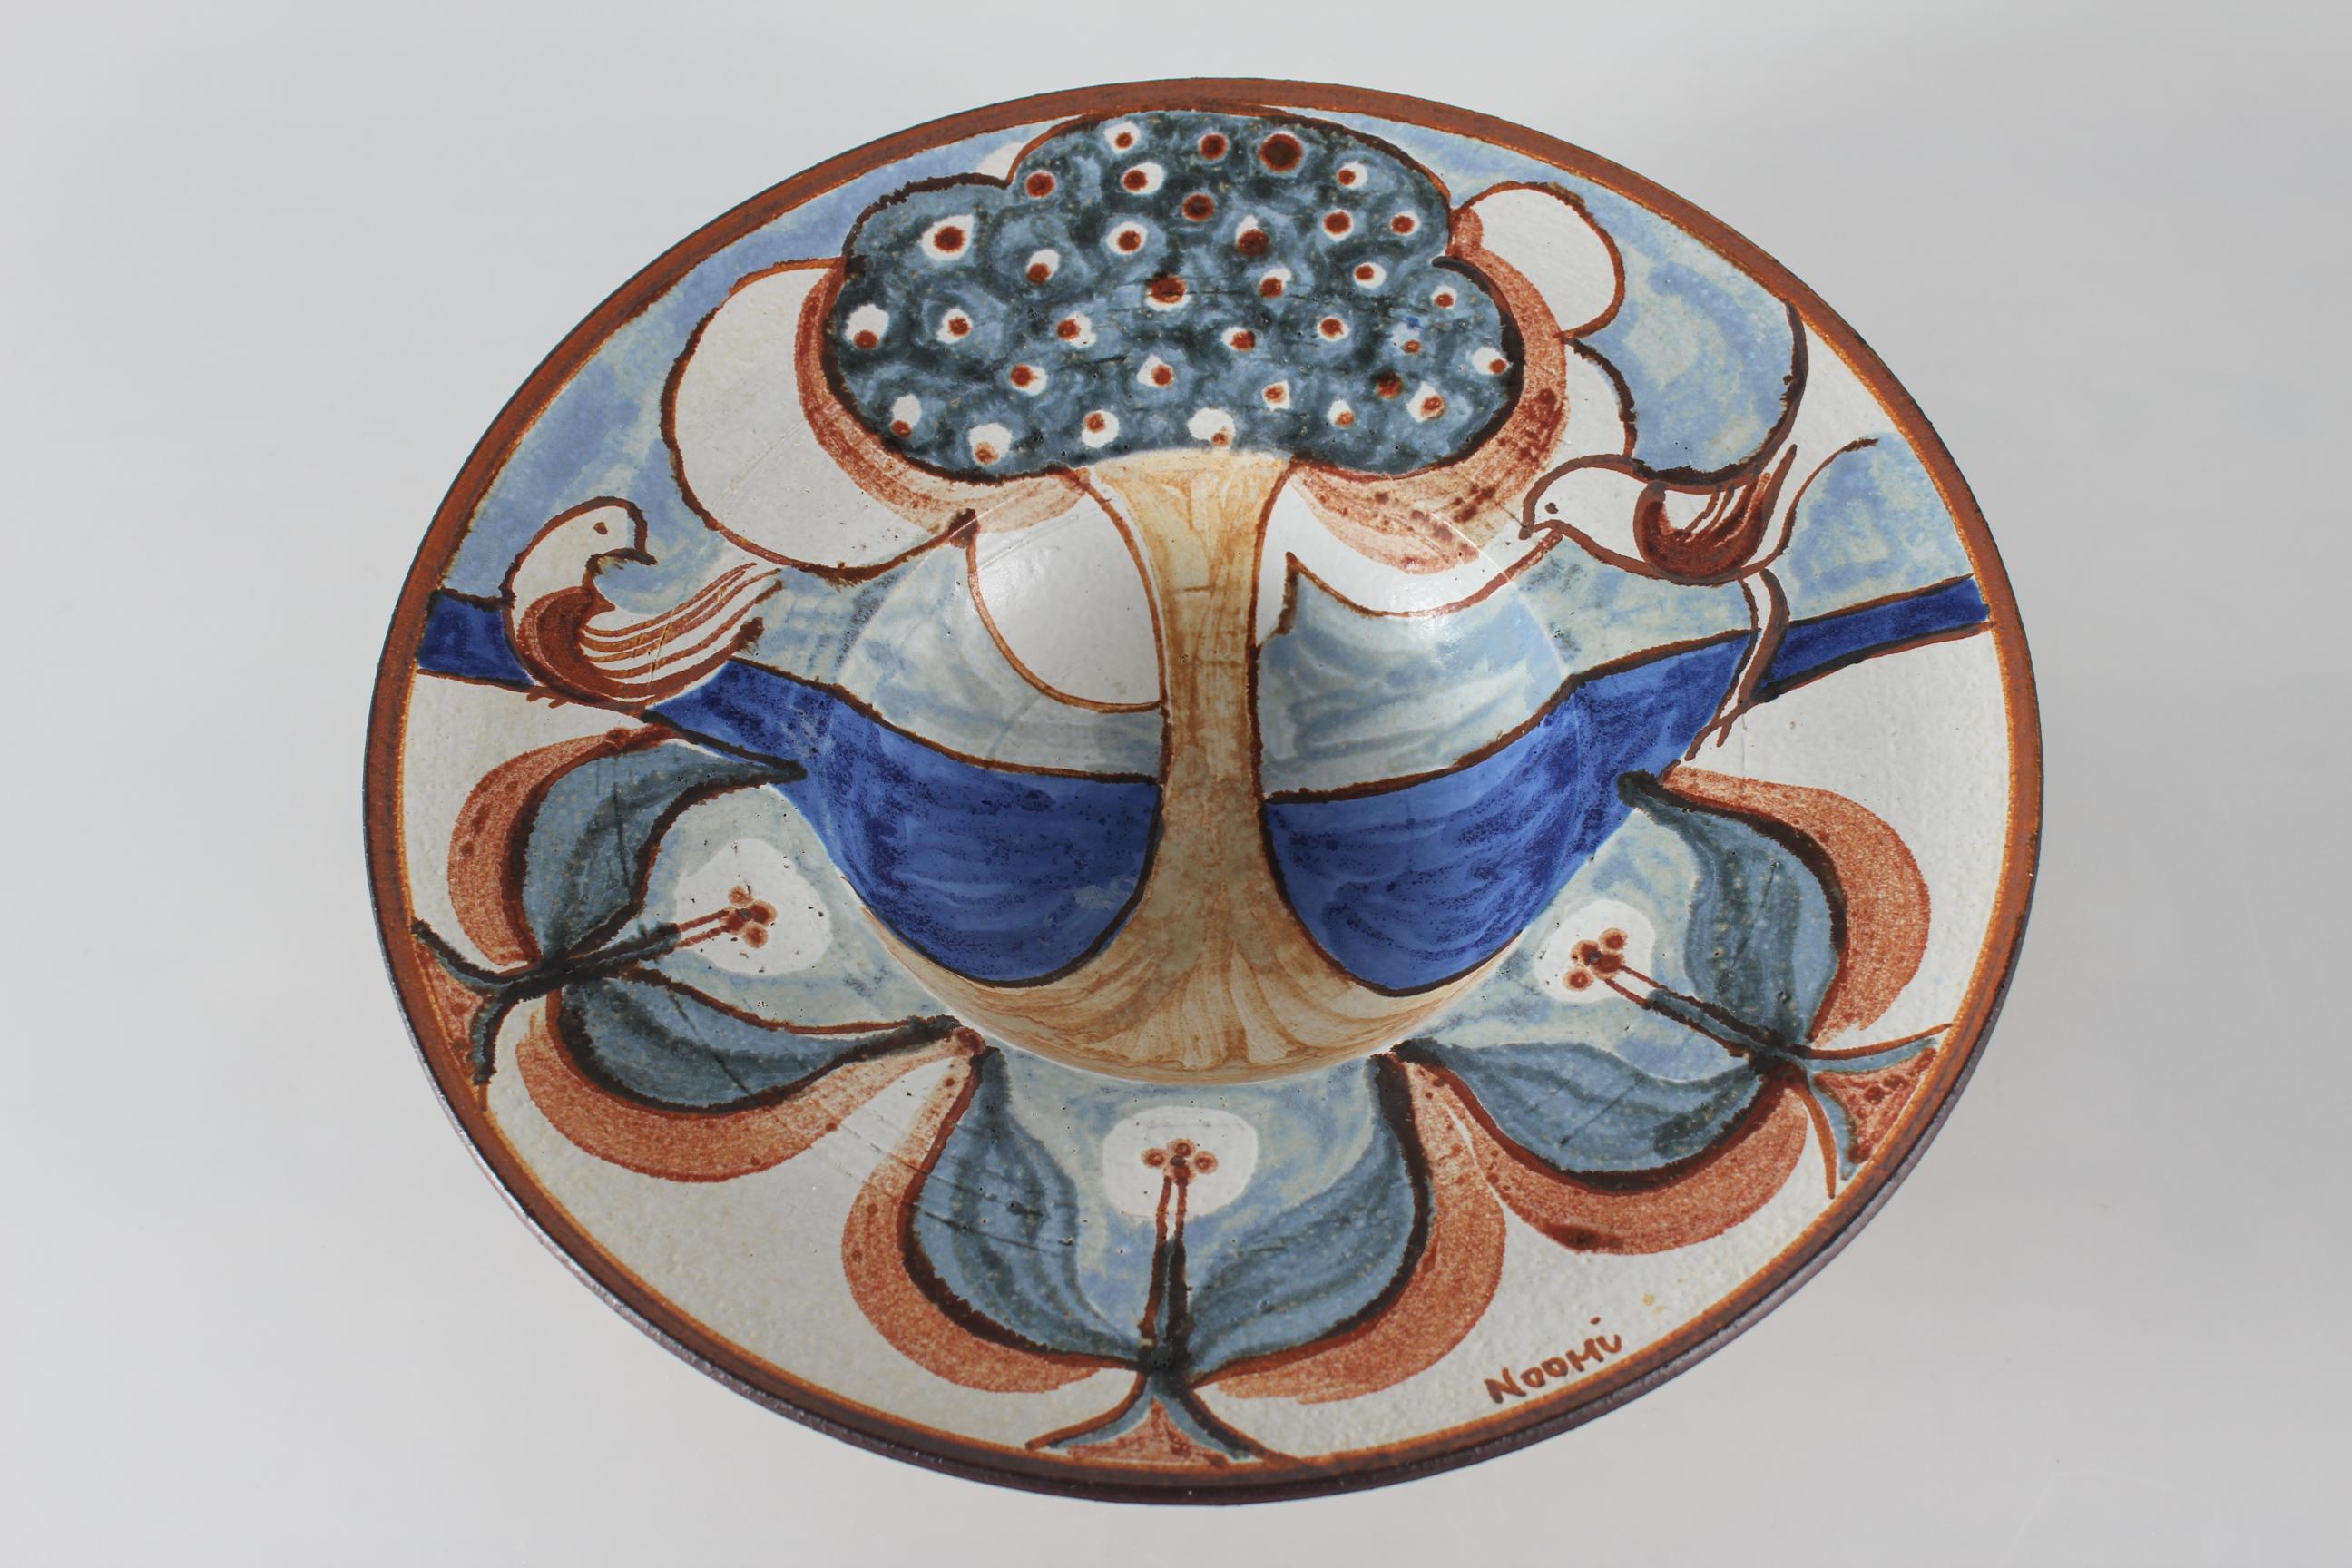 Énorme bol en céramique de Noomi Backhausen pour Søholm Danemark.
Ce bol au motif de l'arbre de vie est réalisé en terre chamottée, ce qui lui confère une surface vive. 
Il est décoré de couleurs blanc cassé, marron, bleu foncé, bleu clair et vert